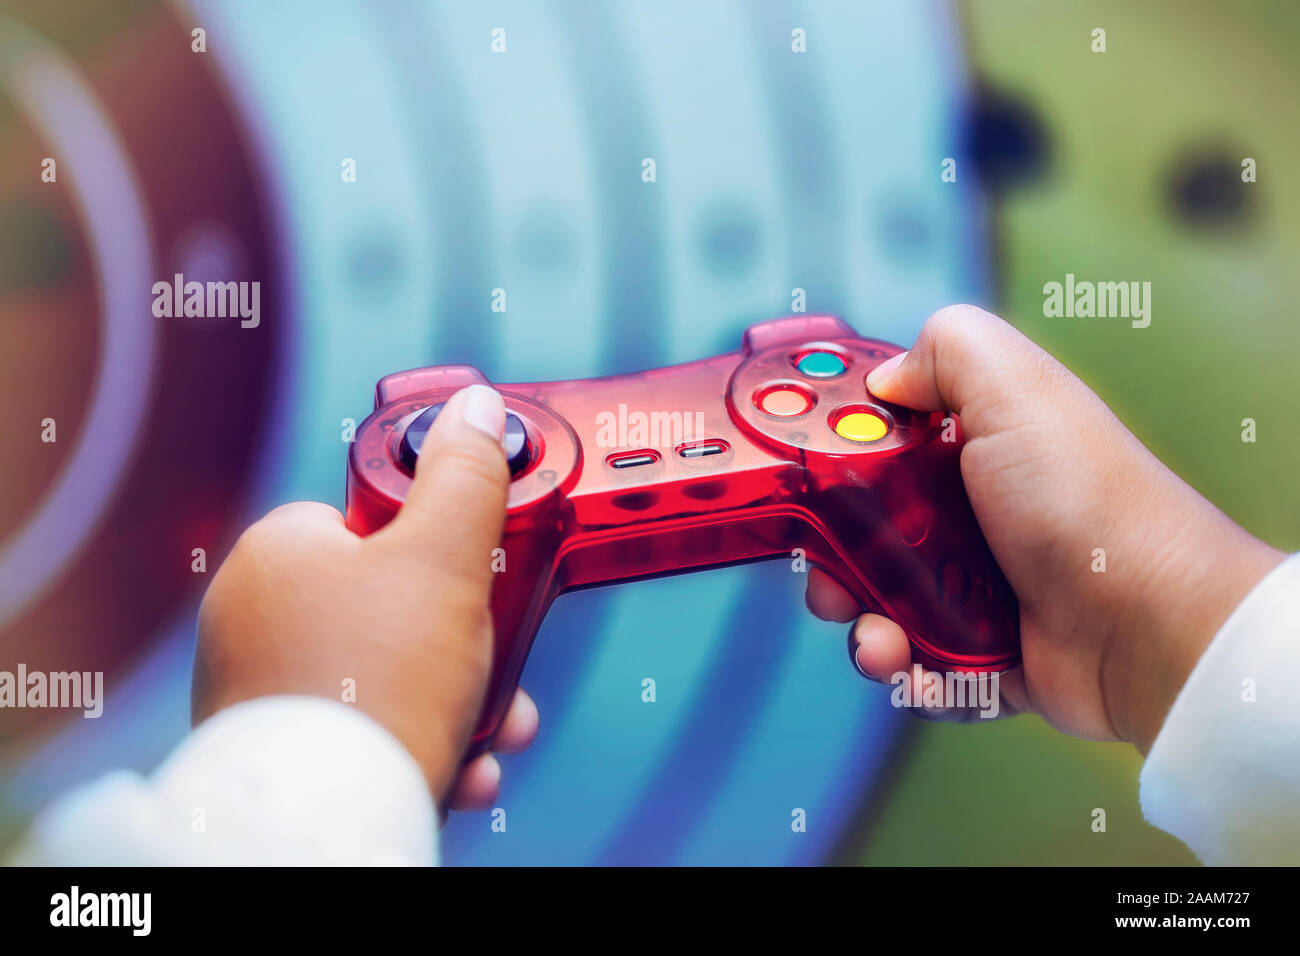 Un niño que está jugando un juego de video, género de disparos cerca de las manos sosteniendo el controlador y pulsar botones. Foto de stock